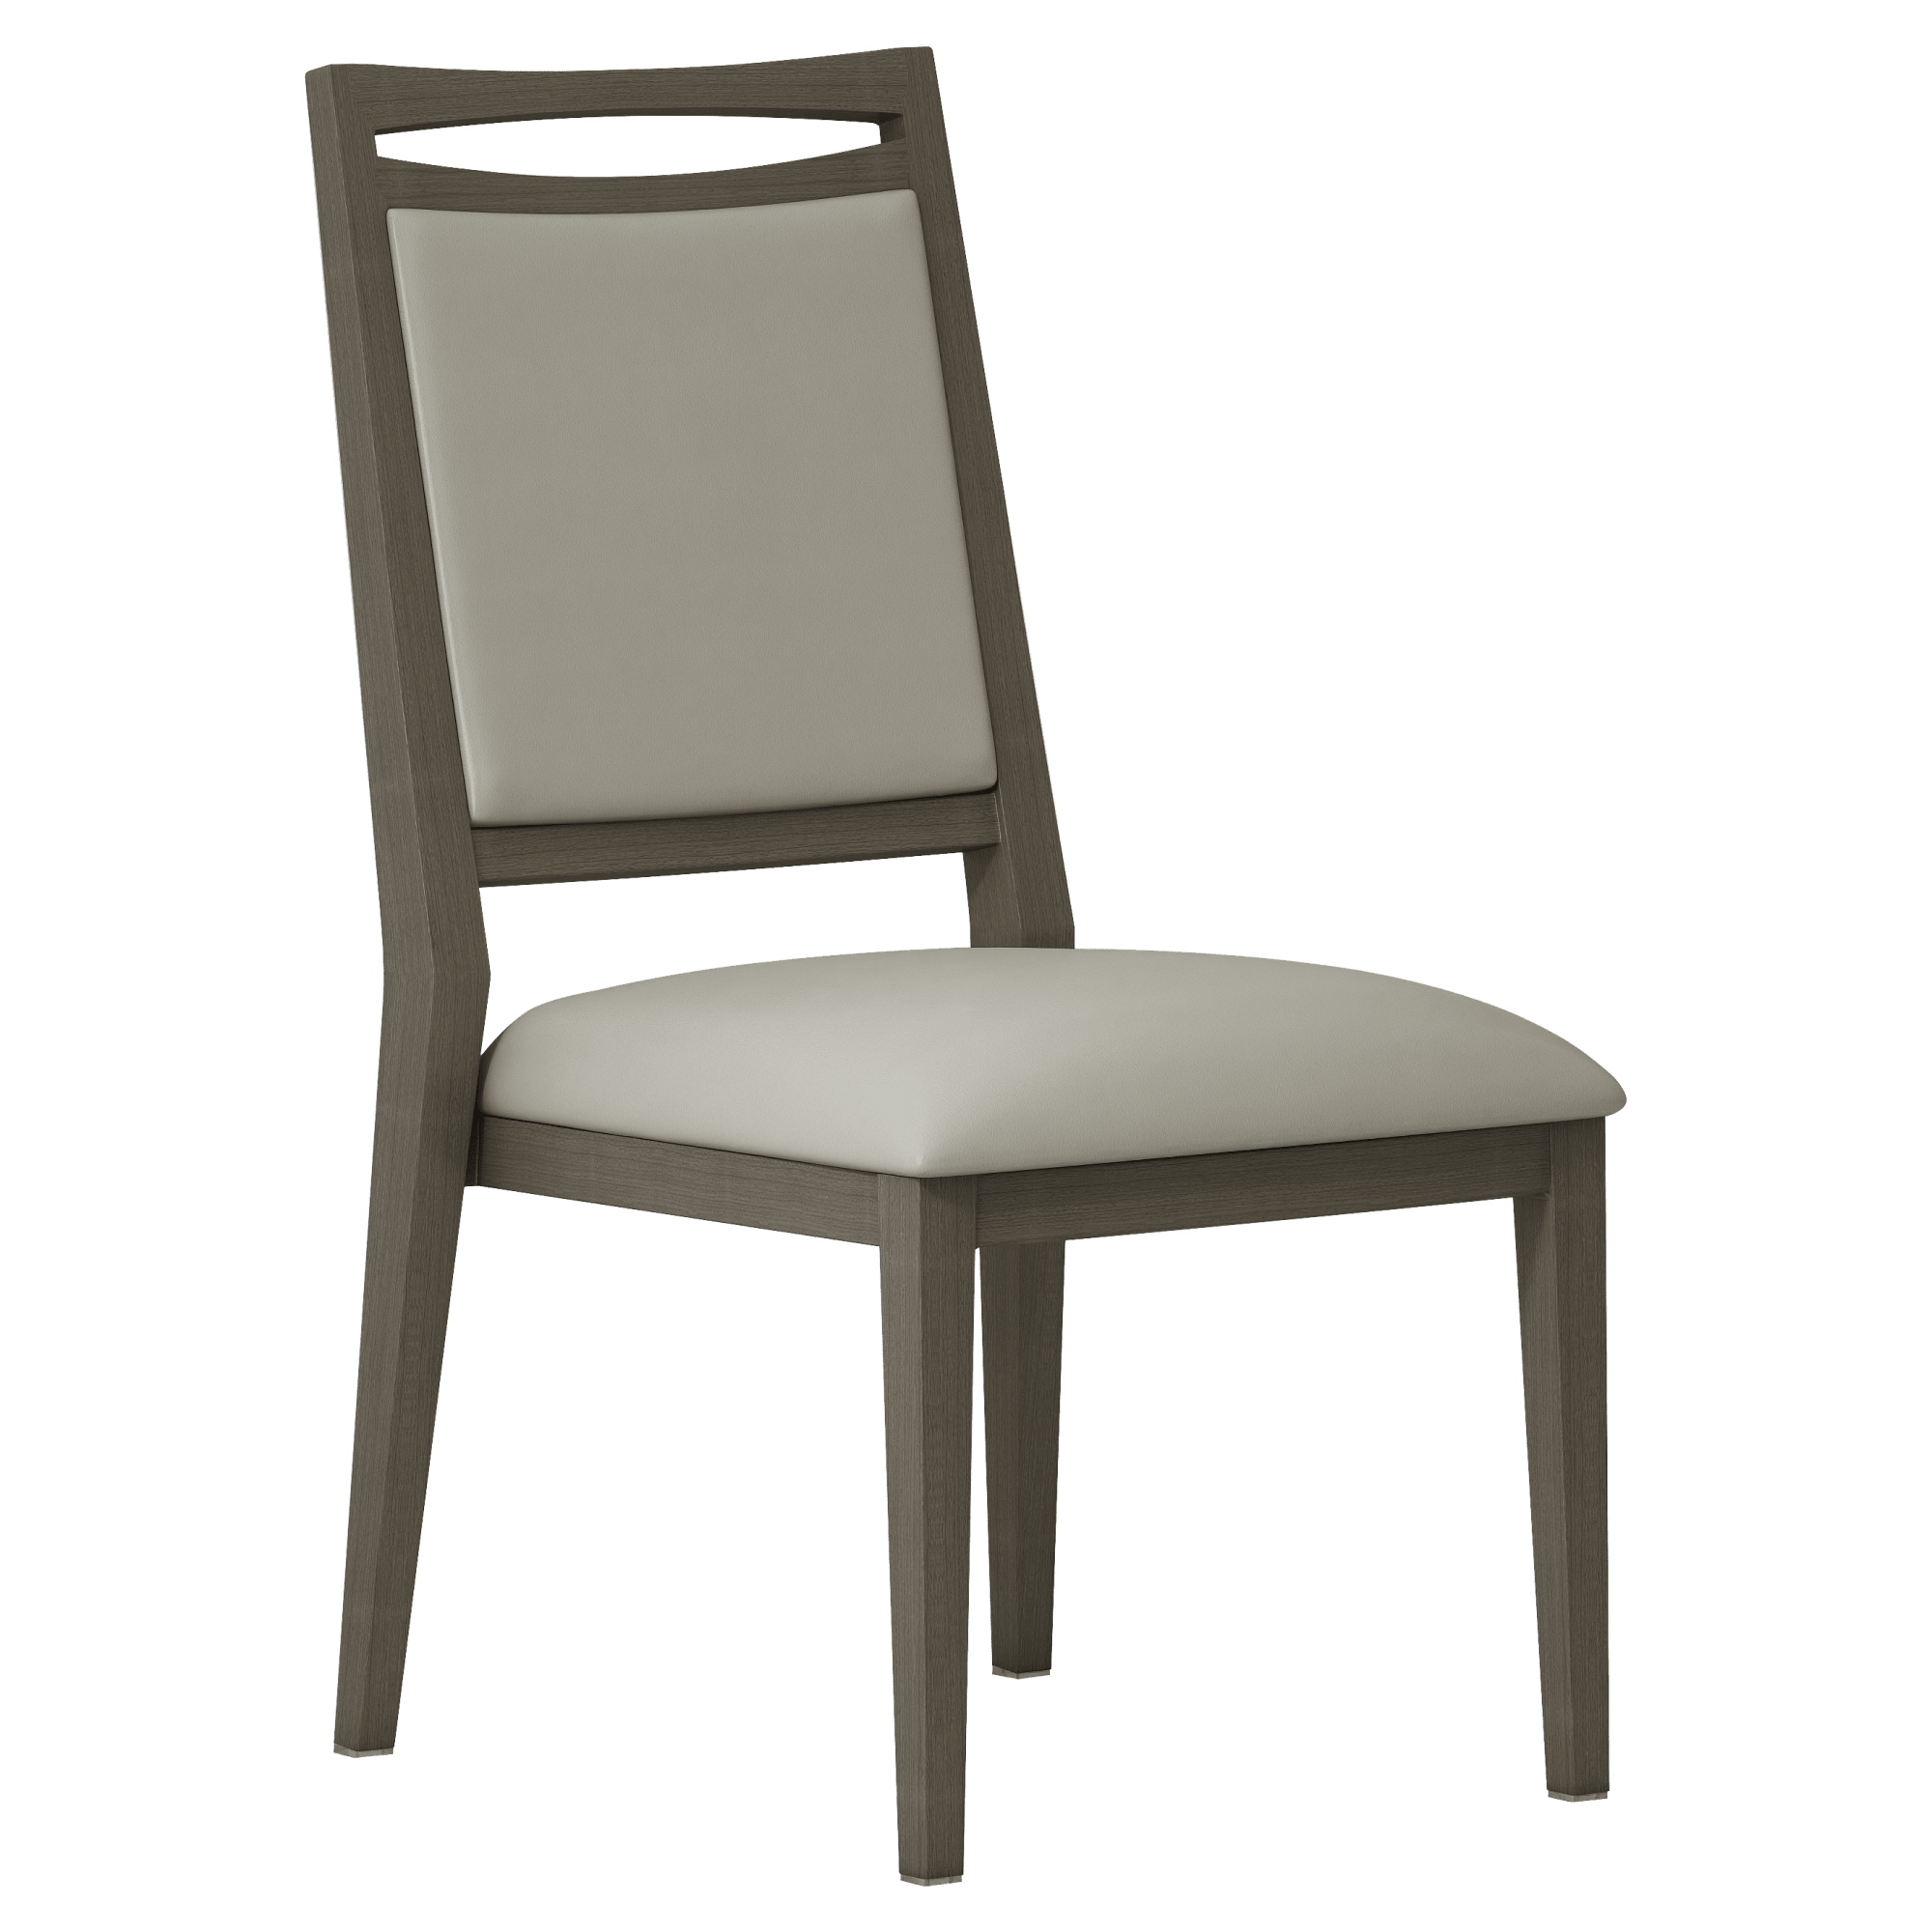 Koufax Upholstered Aluminum Chair